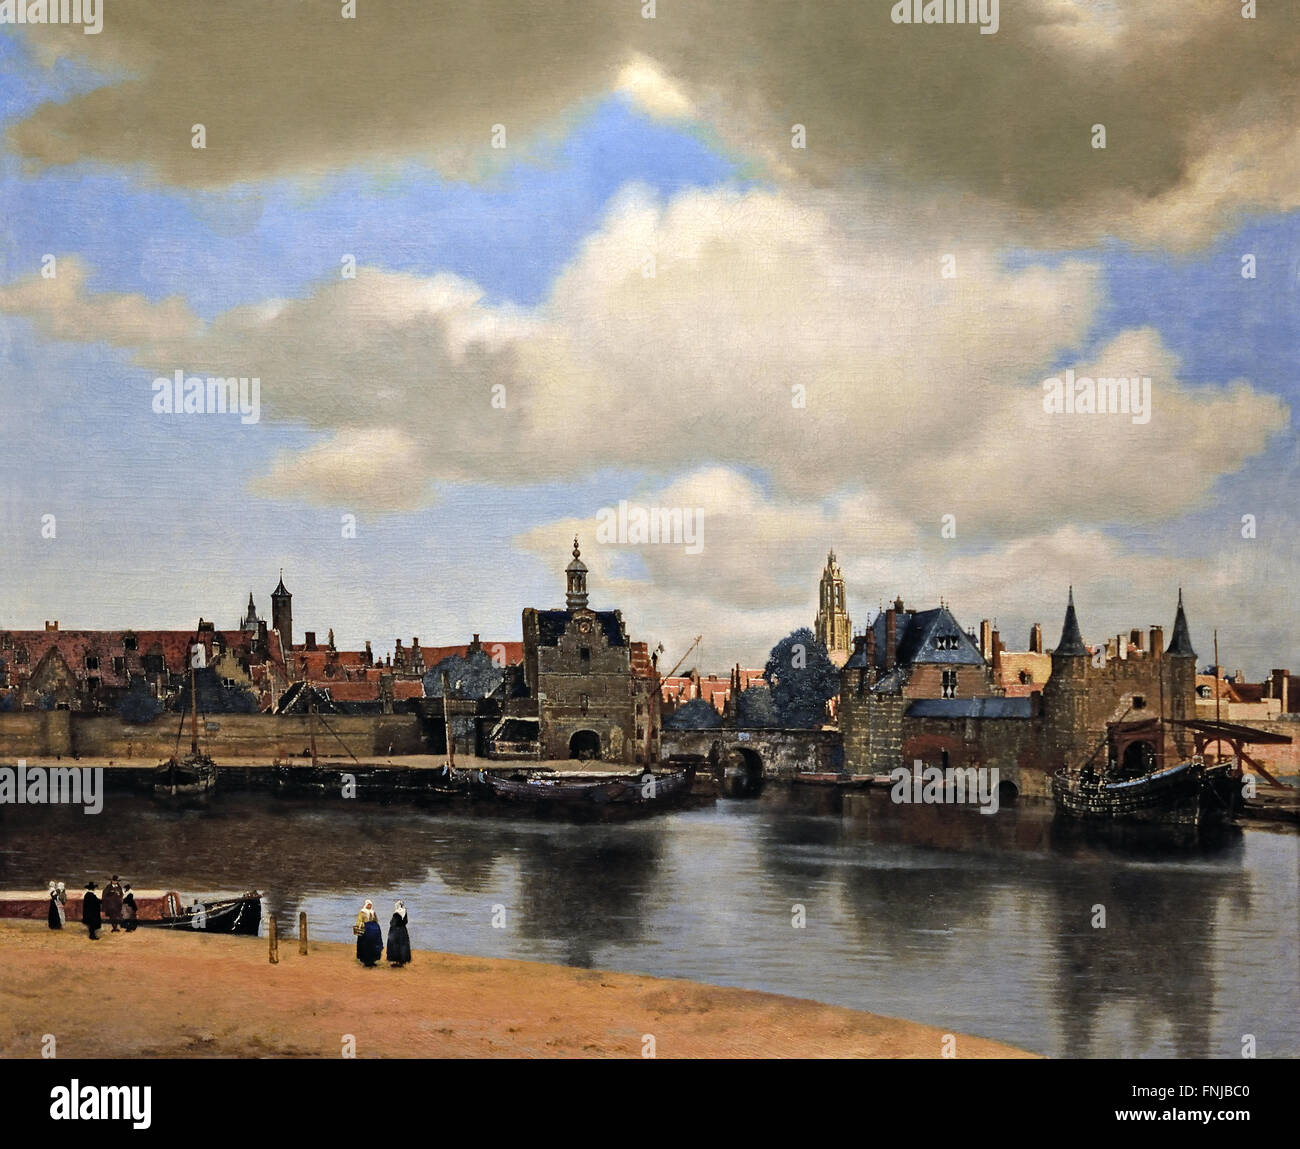 Skyline The View of Delft 1660-1661 Johannes Vermeer oder Jan Vermeer 1632 - 1675 Niederländische Niederlande ( niederländischer Maler im Goldenen Zeitalter, einer der größten Maler im 17. Jahrhundert. Bevorzugte zeitlose, gedämpfte Momente, bleibt rätselhaft, unnachahmliches Farbschema und verwirrender Lichtinhalt) Stockfoto